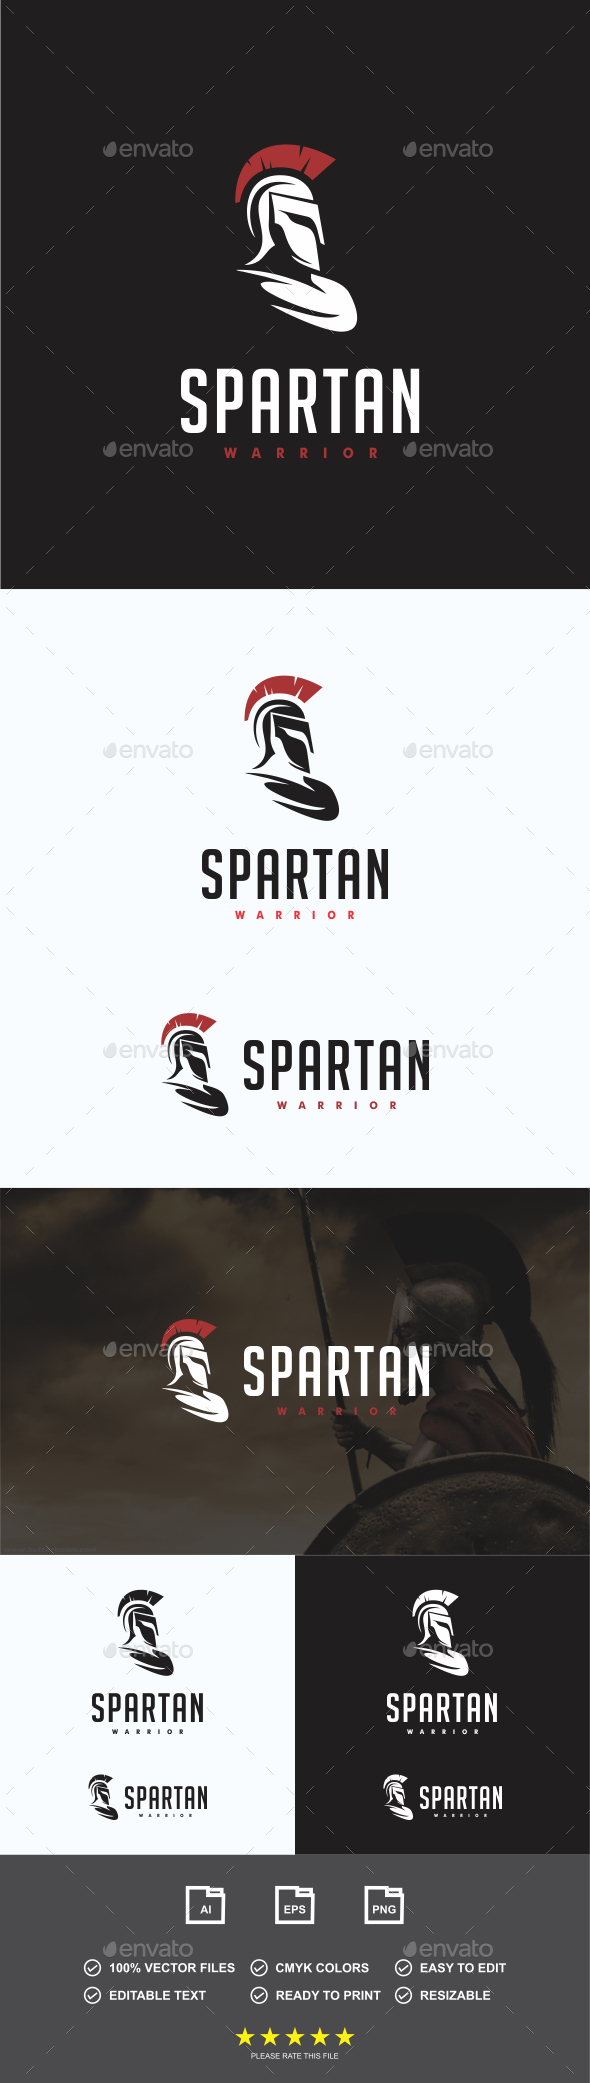 Spartan Warrior Logo by redwolf85 | GraphicRiver